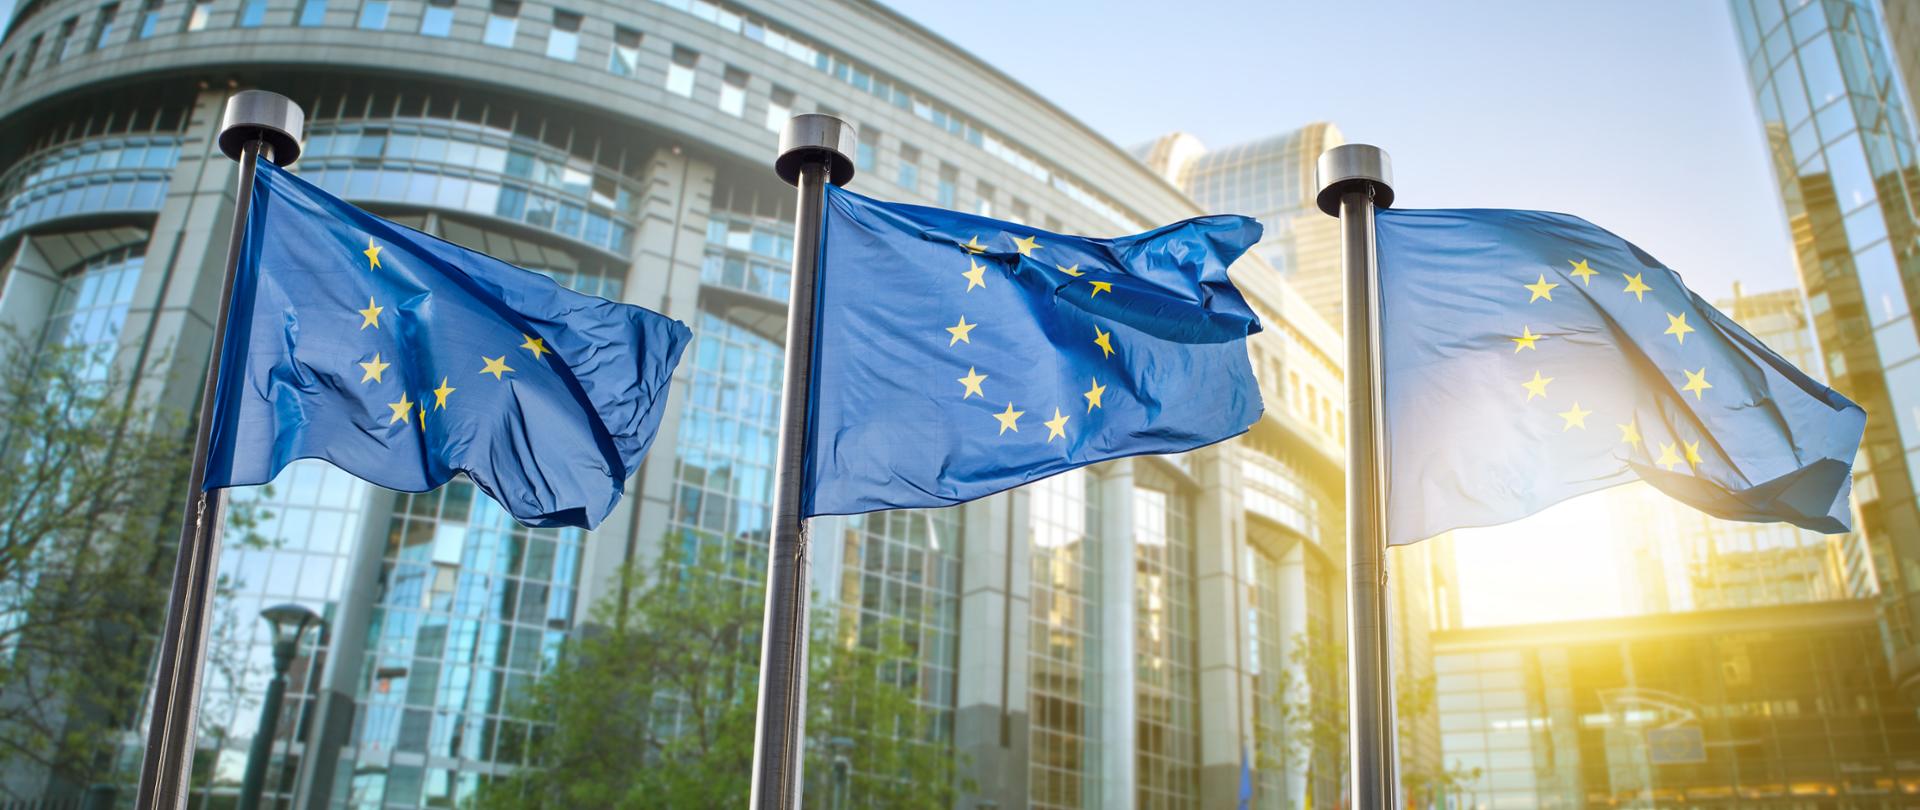 European union flag against parliament in Brussels, Belgium